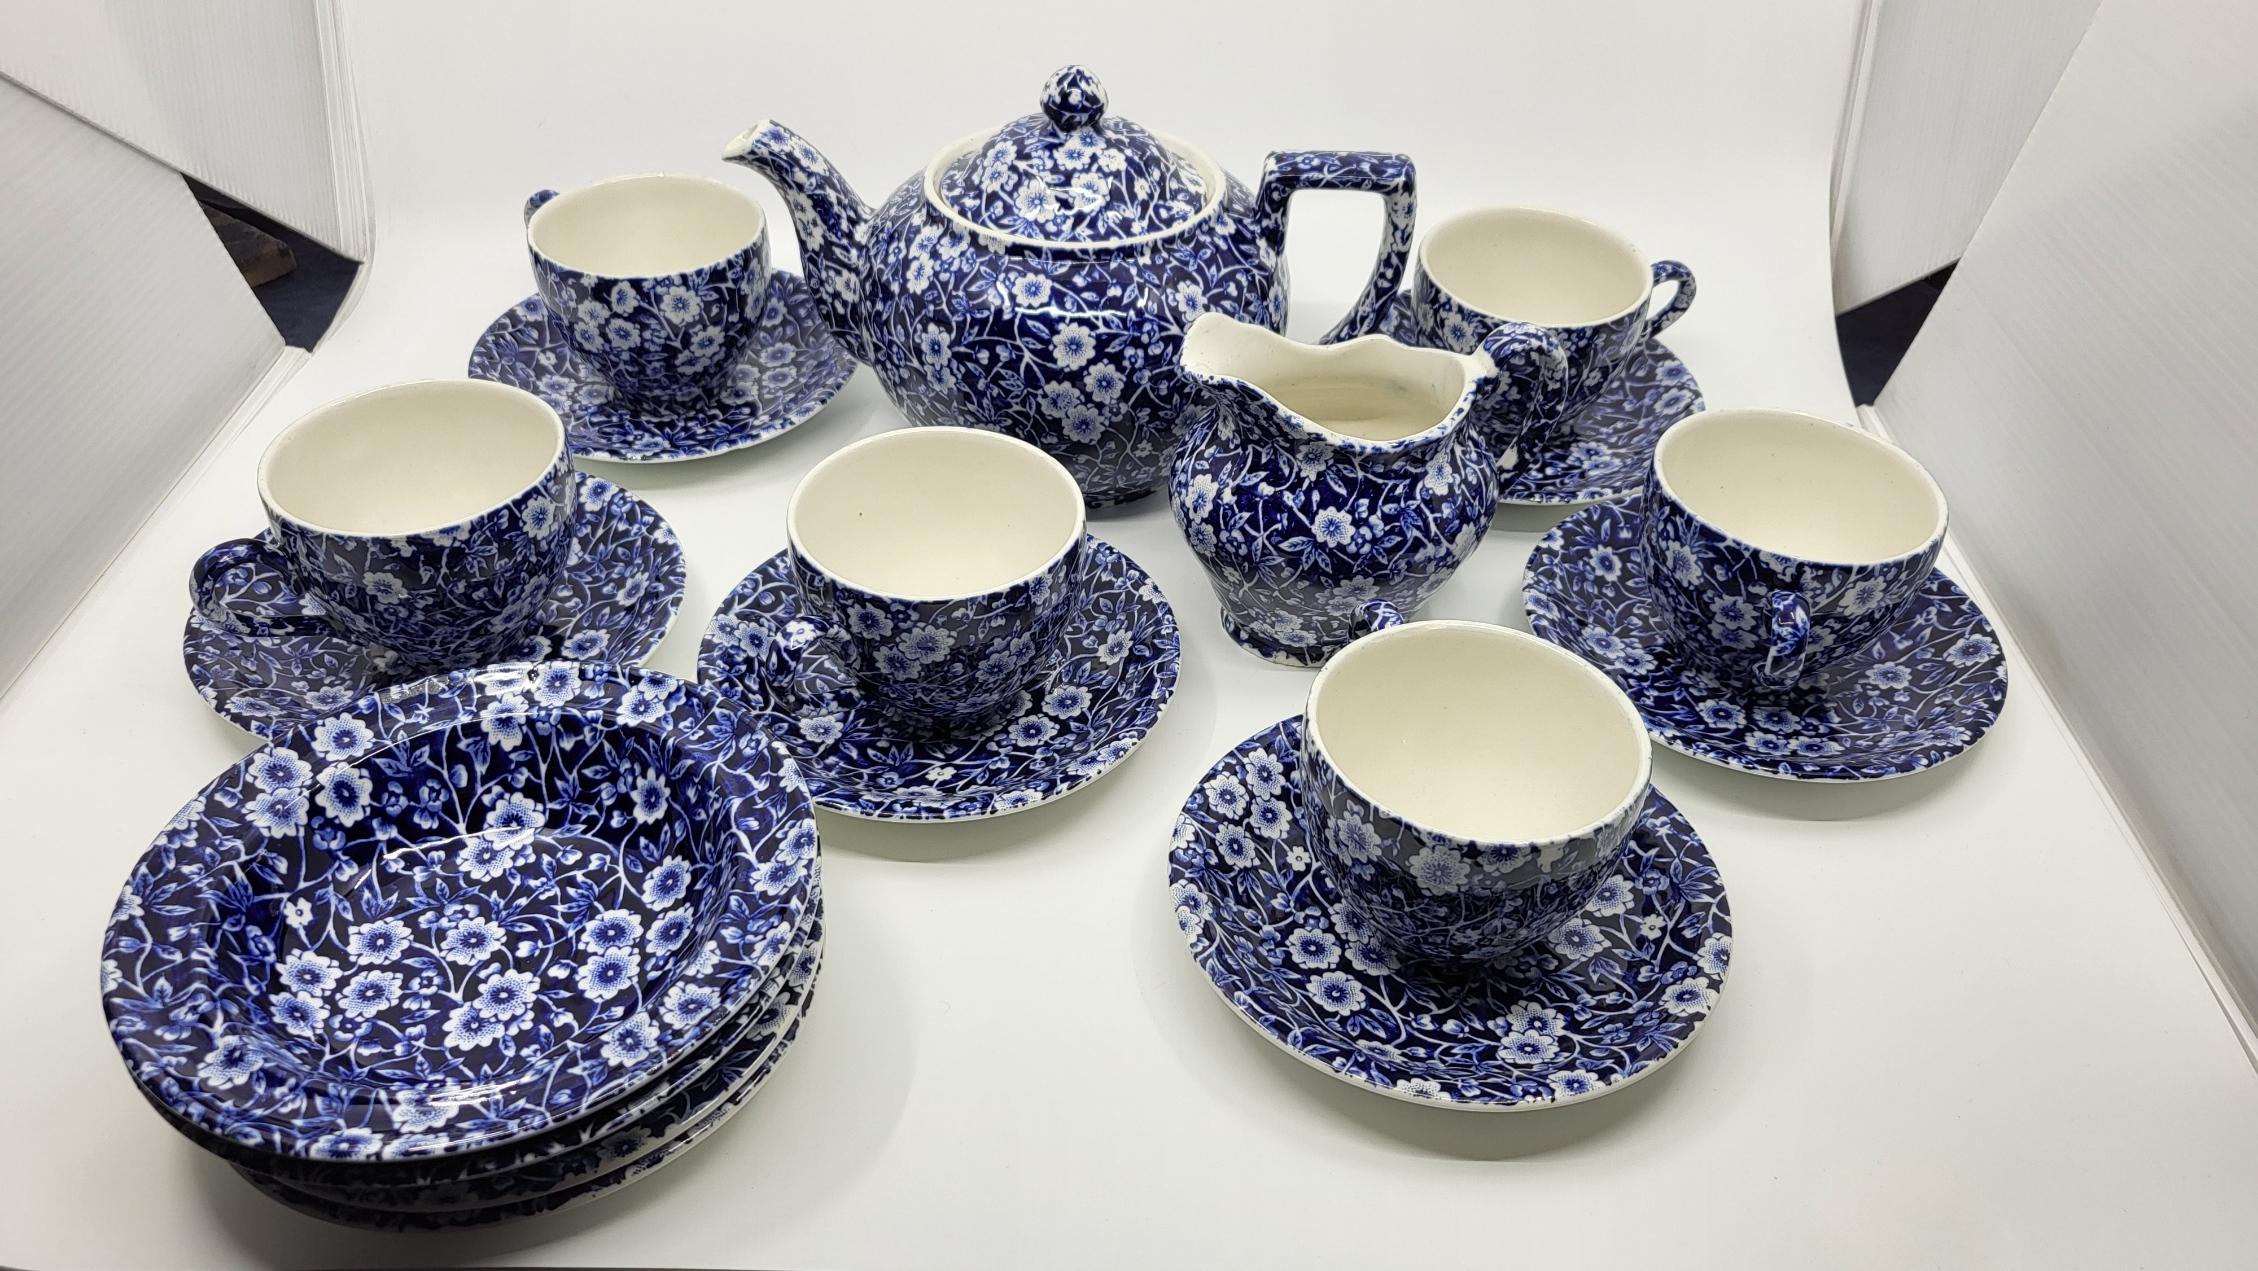 Service à thé ou café Calico, signé Burleigh Staffordshire England à fleurs bleues. Il se compose d'une théière, un pot à lait, 8 sous tasses, 6 tasses, 2 ramequins. Le tout est en état parfait jamais utilisé.
Juste un petit manque sur une sous